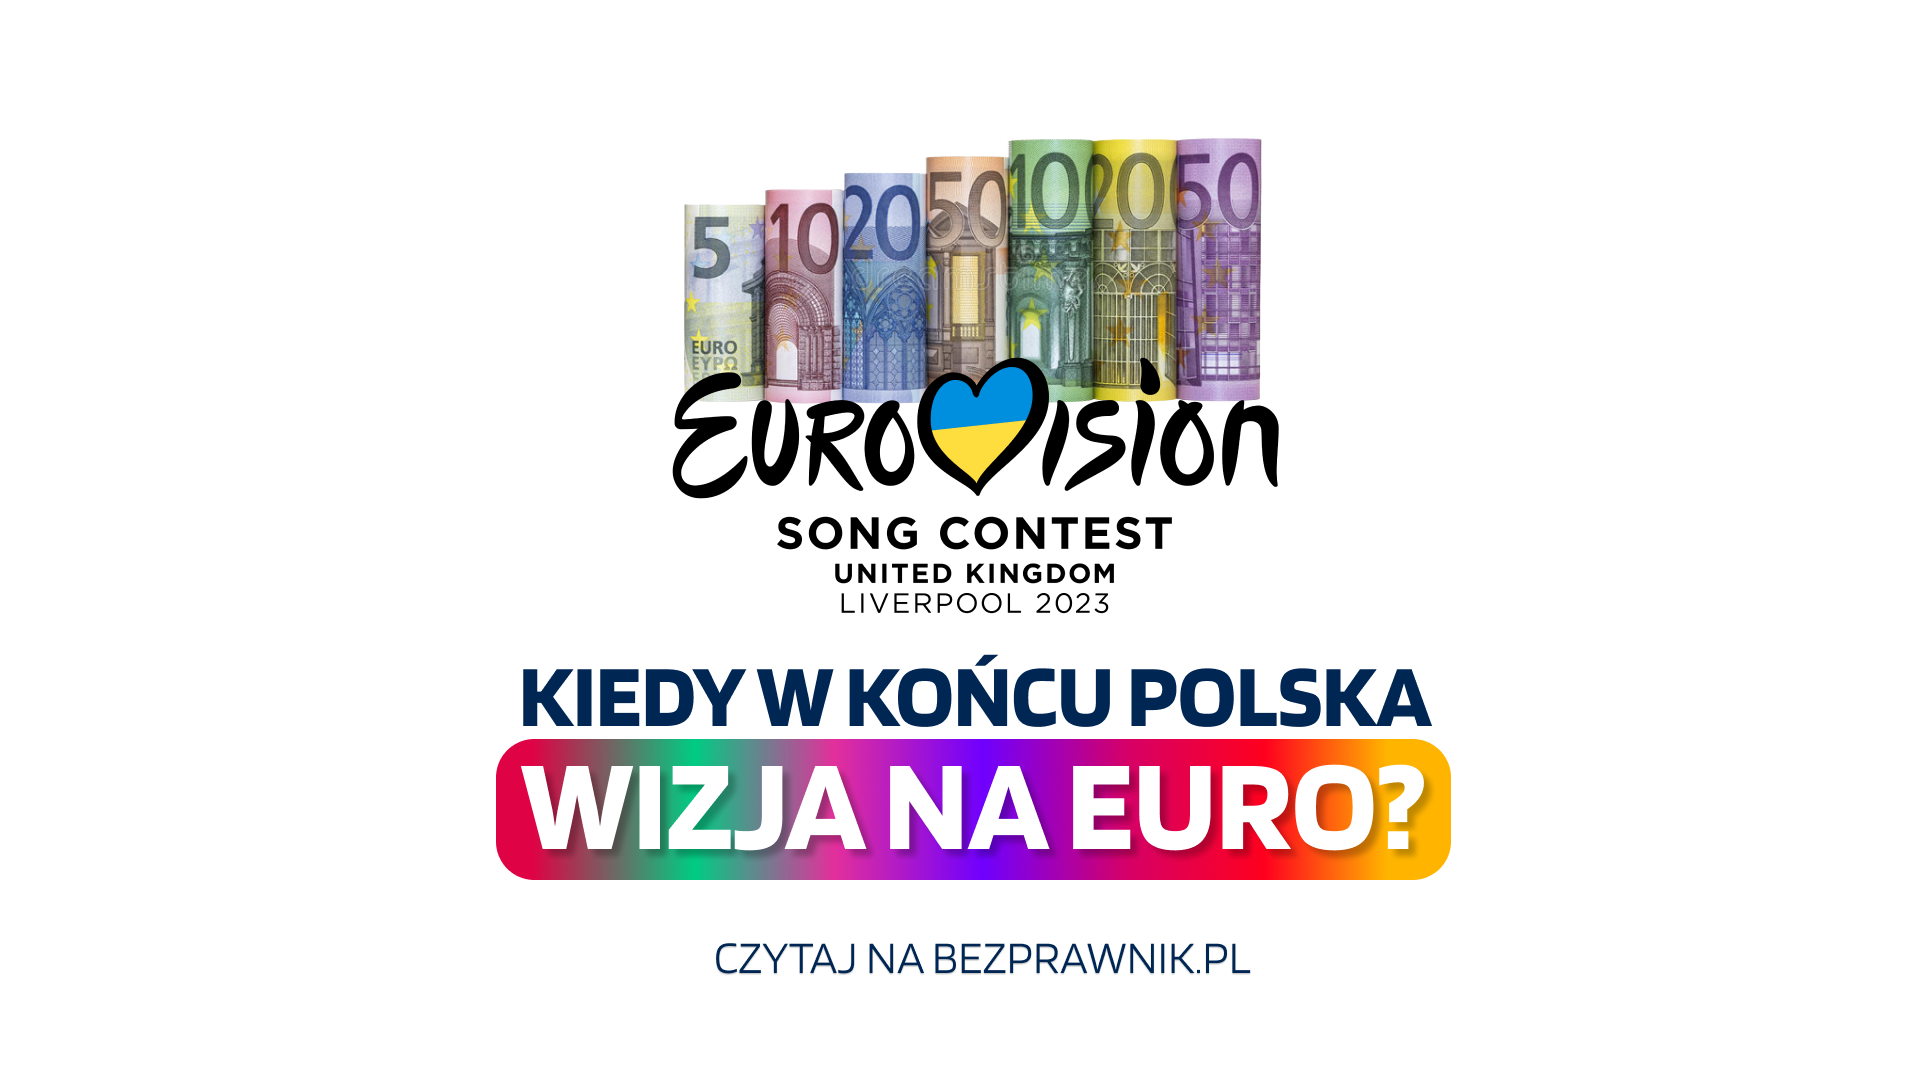 Wizja na euro. Edyta Górniak mogła wygrać Eurowizję, Polska mogła przyjąć wspólną walutę